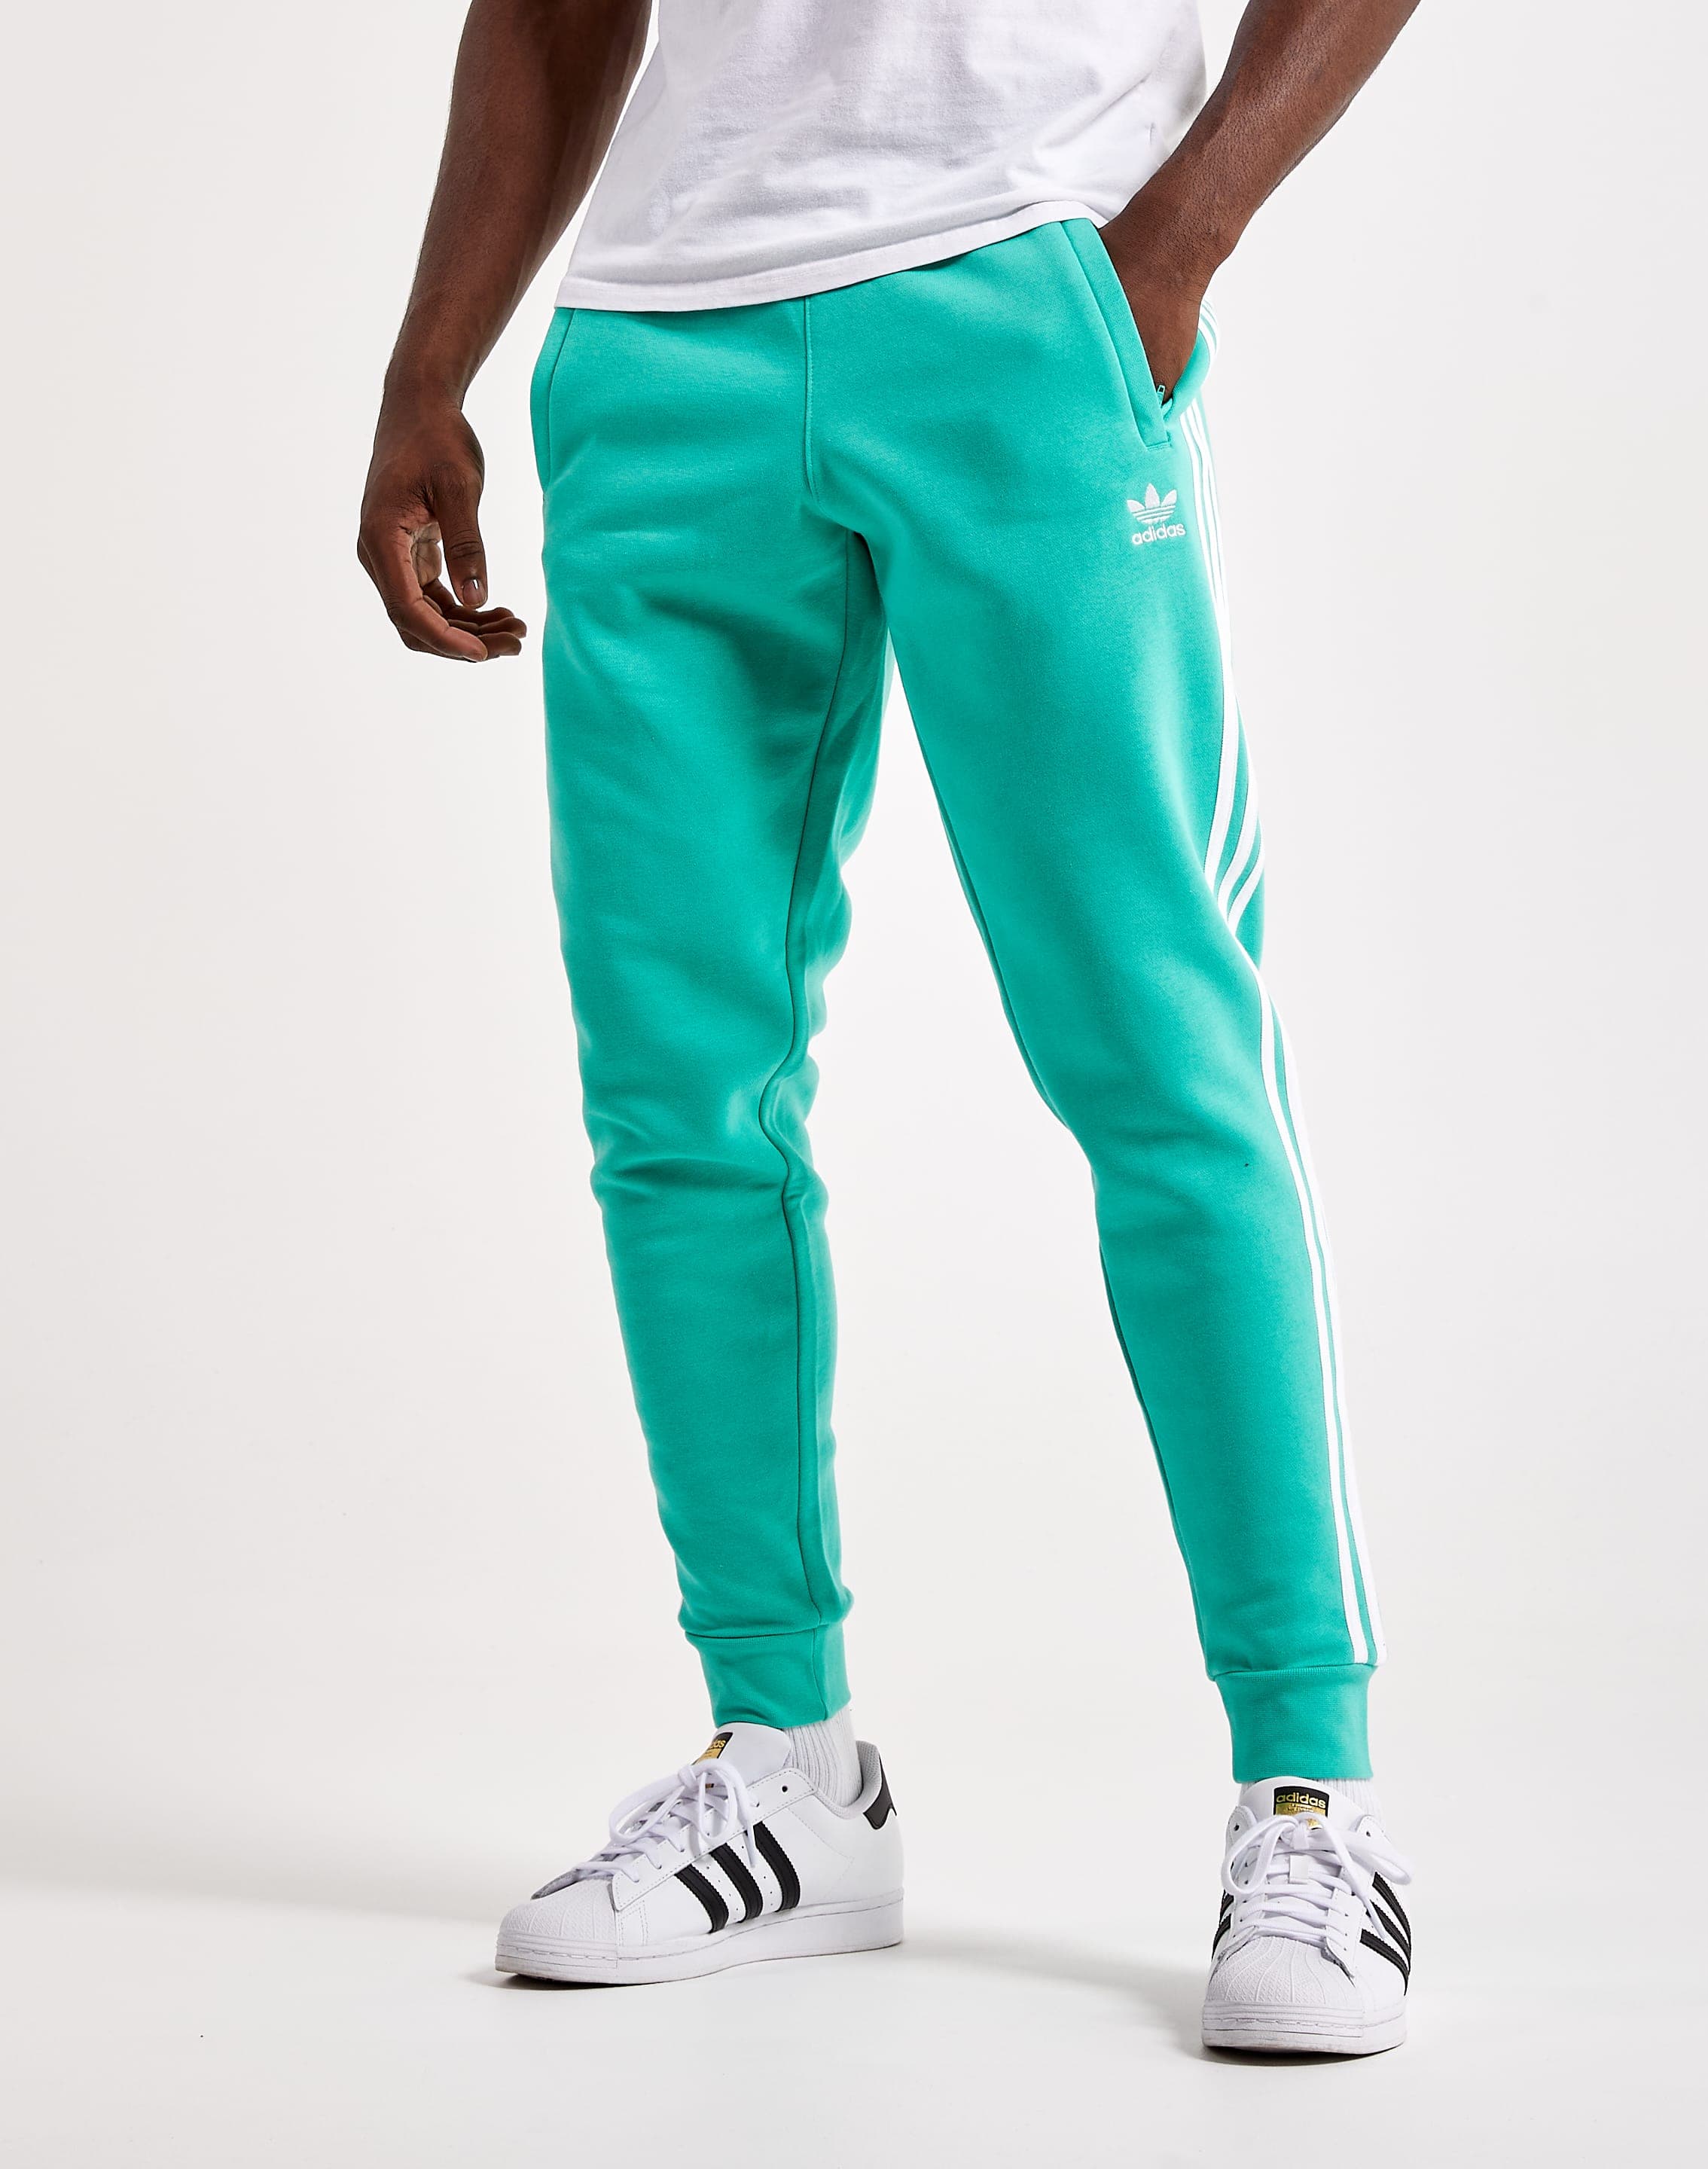 Adidas Classics Pants – DTLR